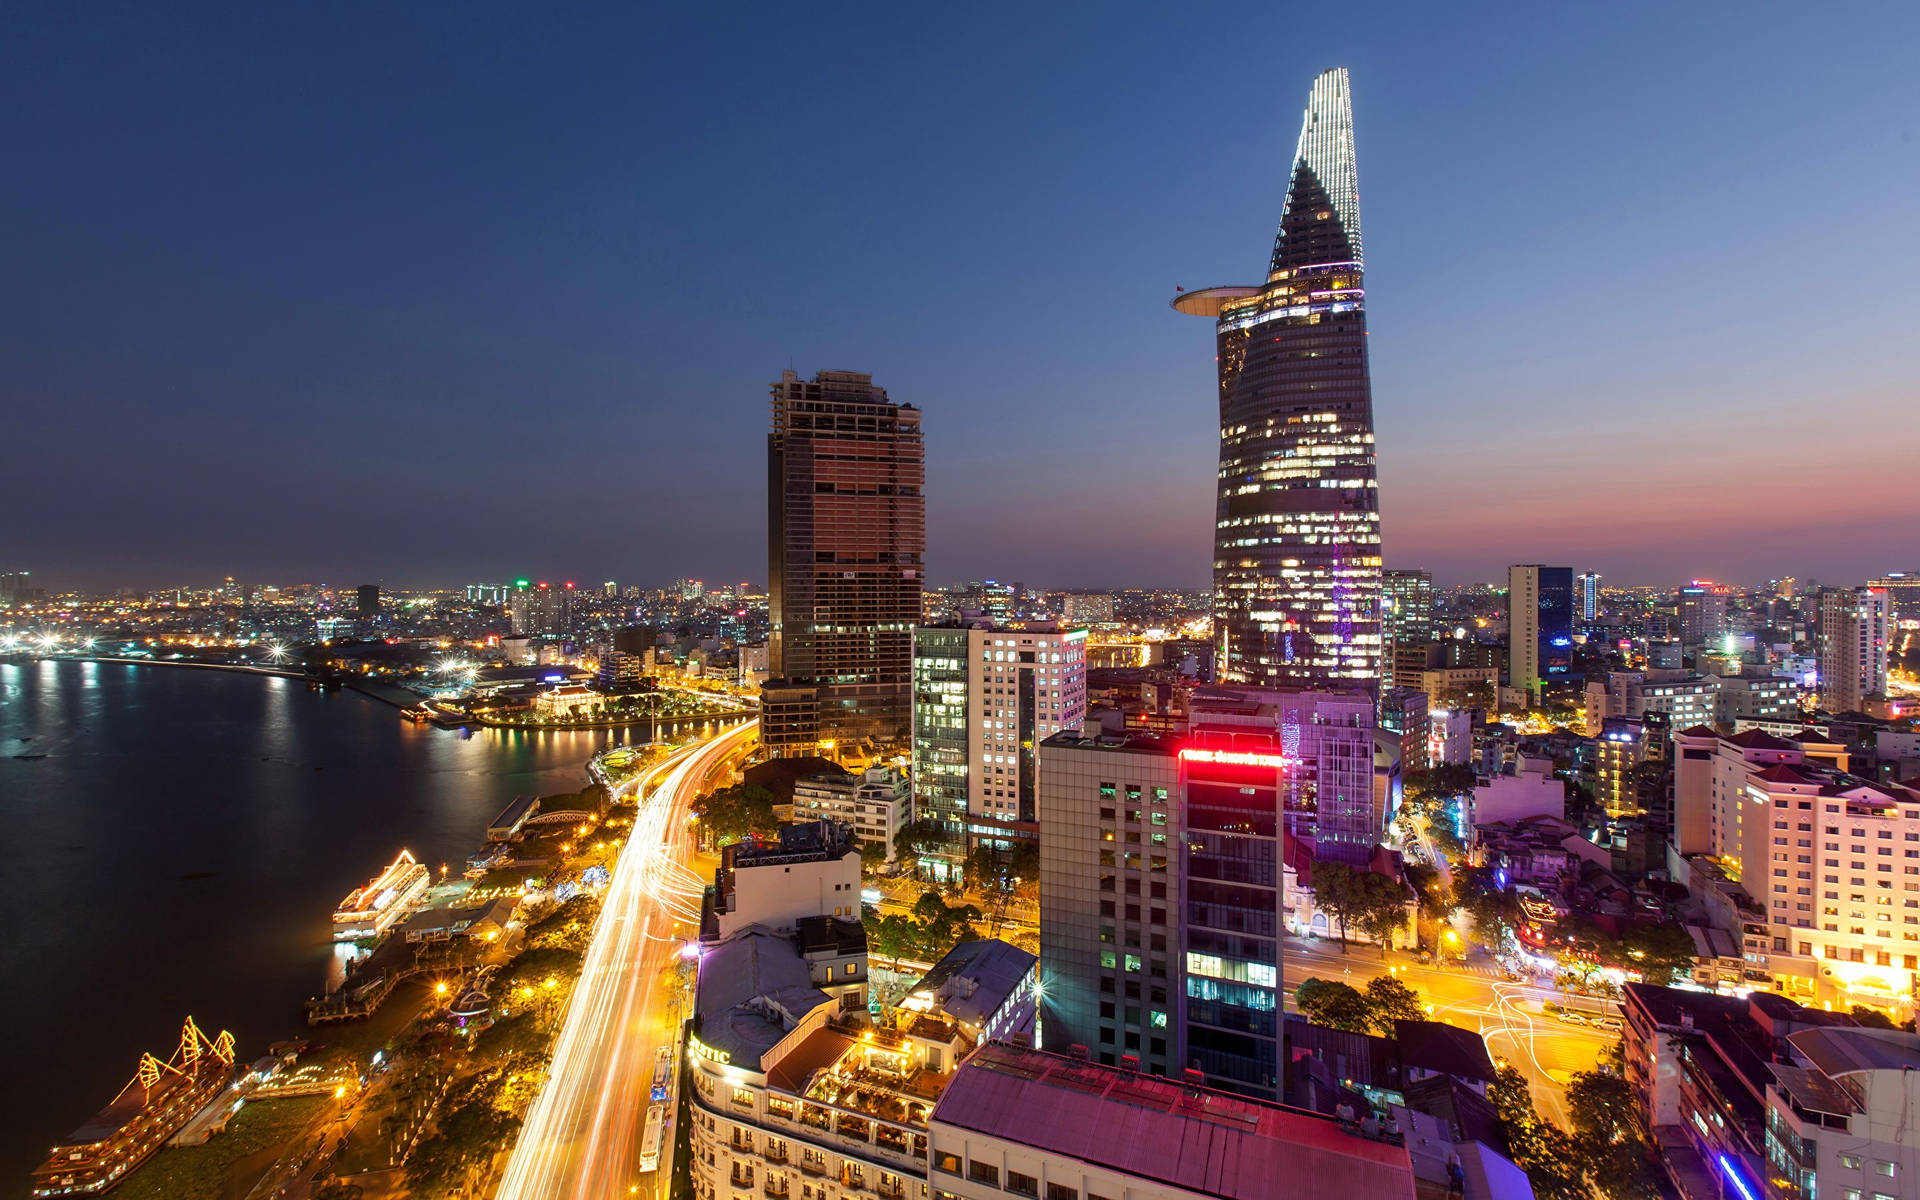 Jagrekommenderar Att Ha En Bild Av Ho Chi Minh City Financial Tower Som Bakgrundsbild På Din Dator Eller Mobiltelefon. Wallpaper